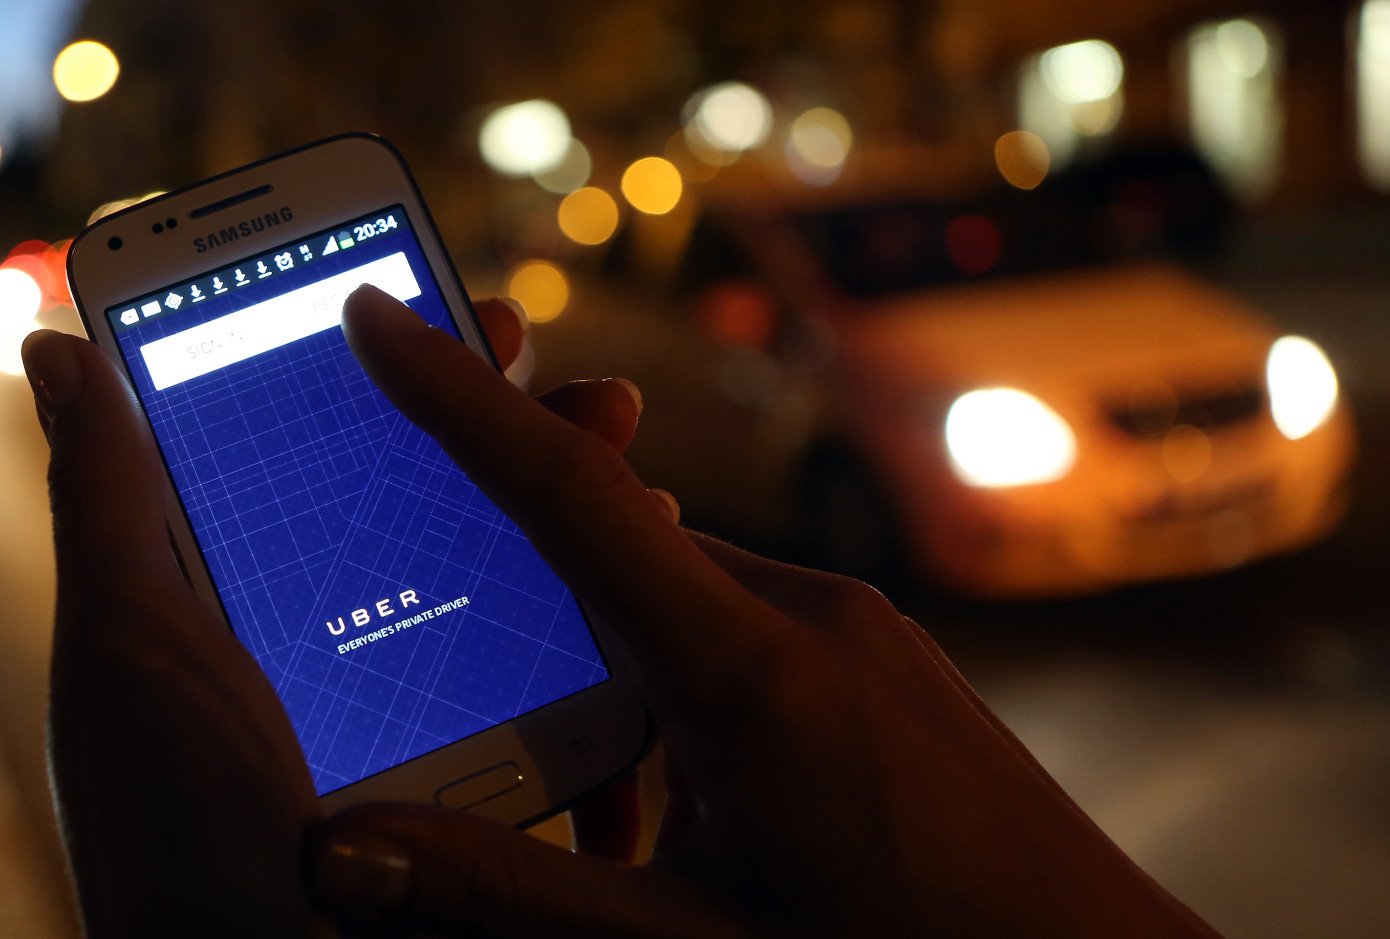 Dịch vụ gọi xe công nghệ Uber đang gặp nhiều khó khăn tại Đức